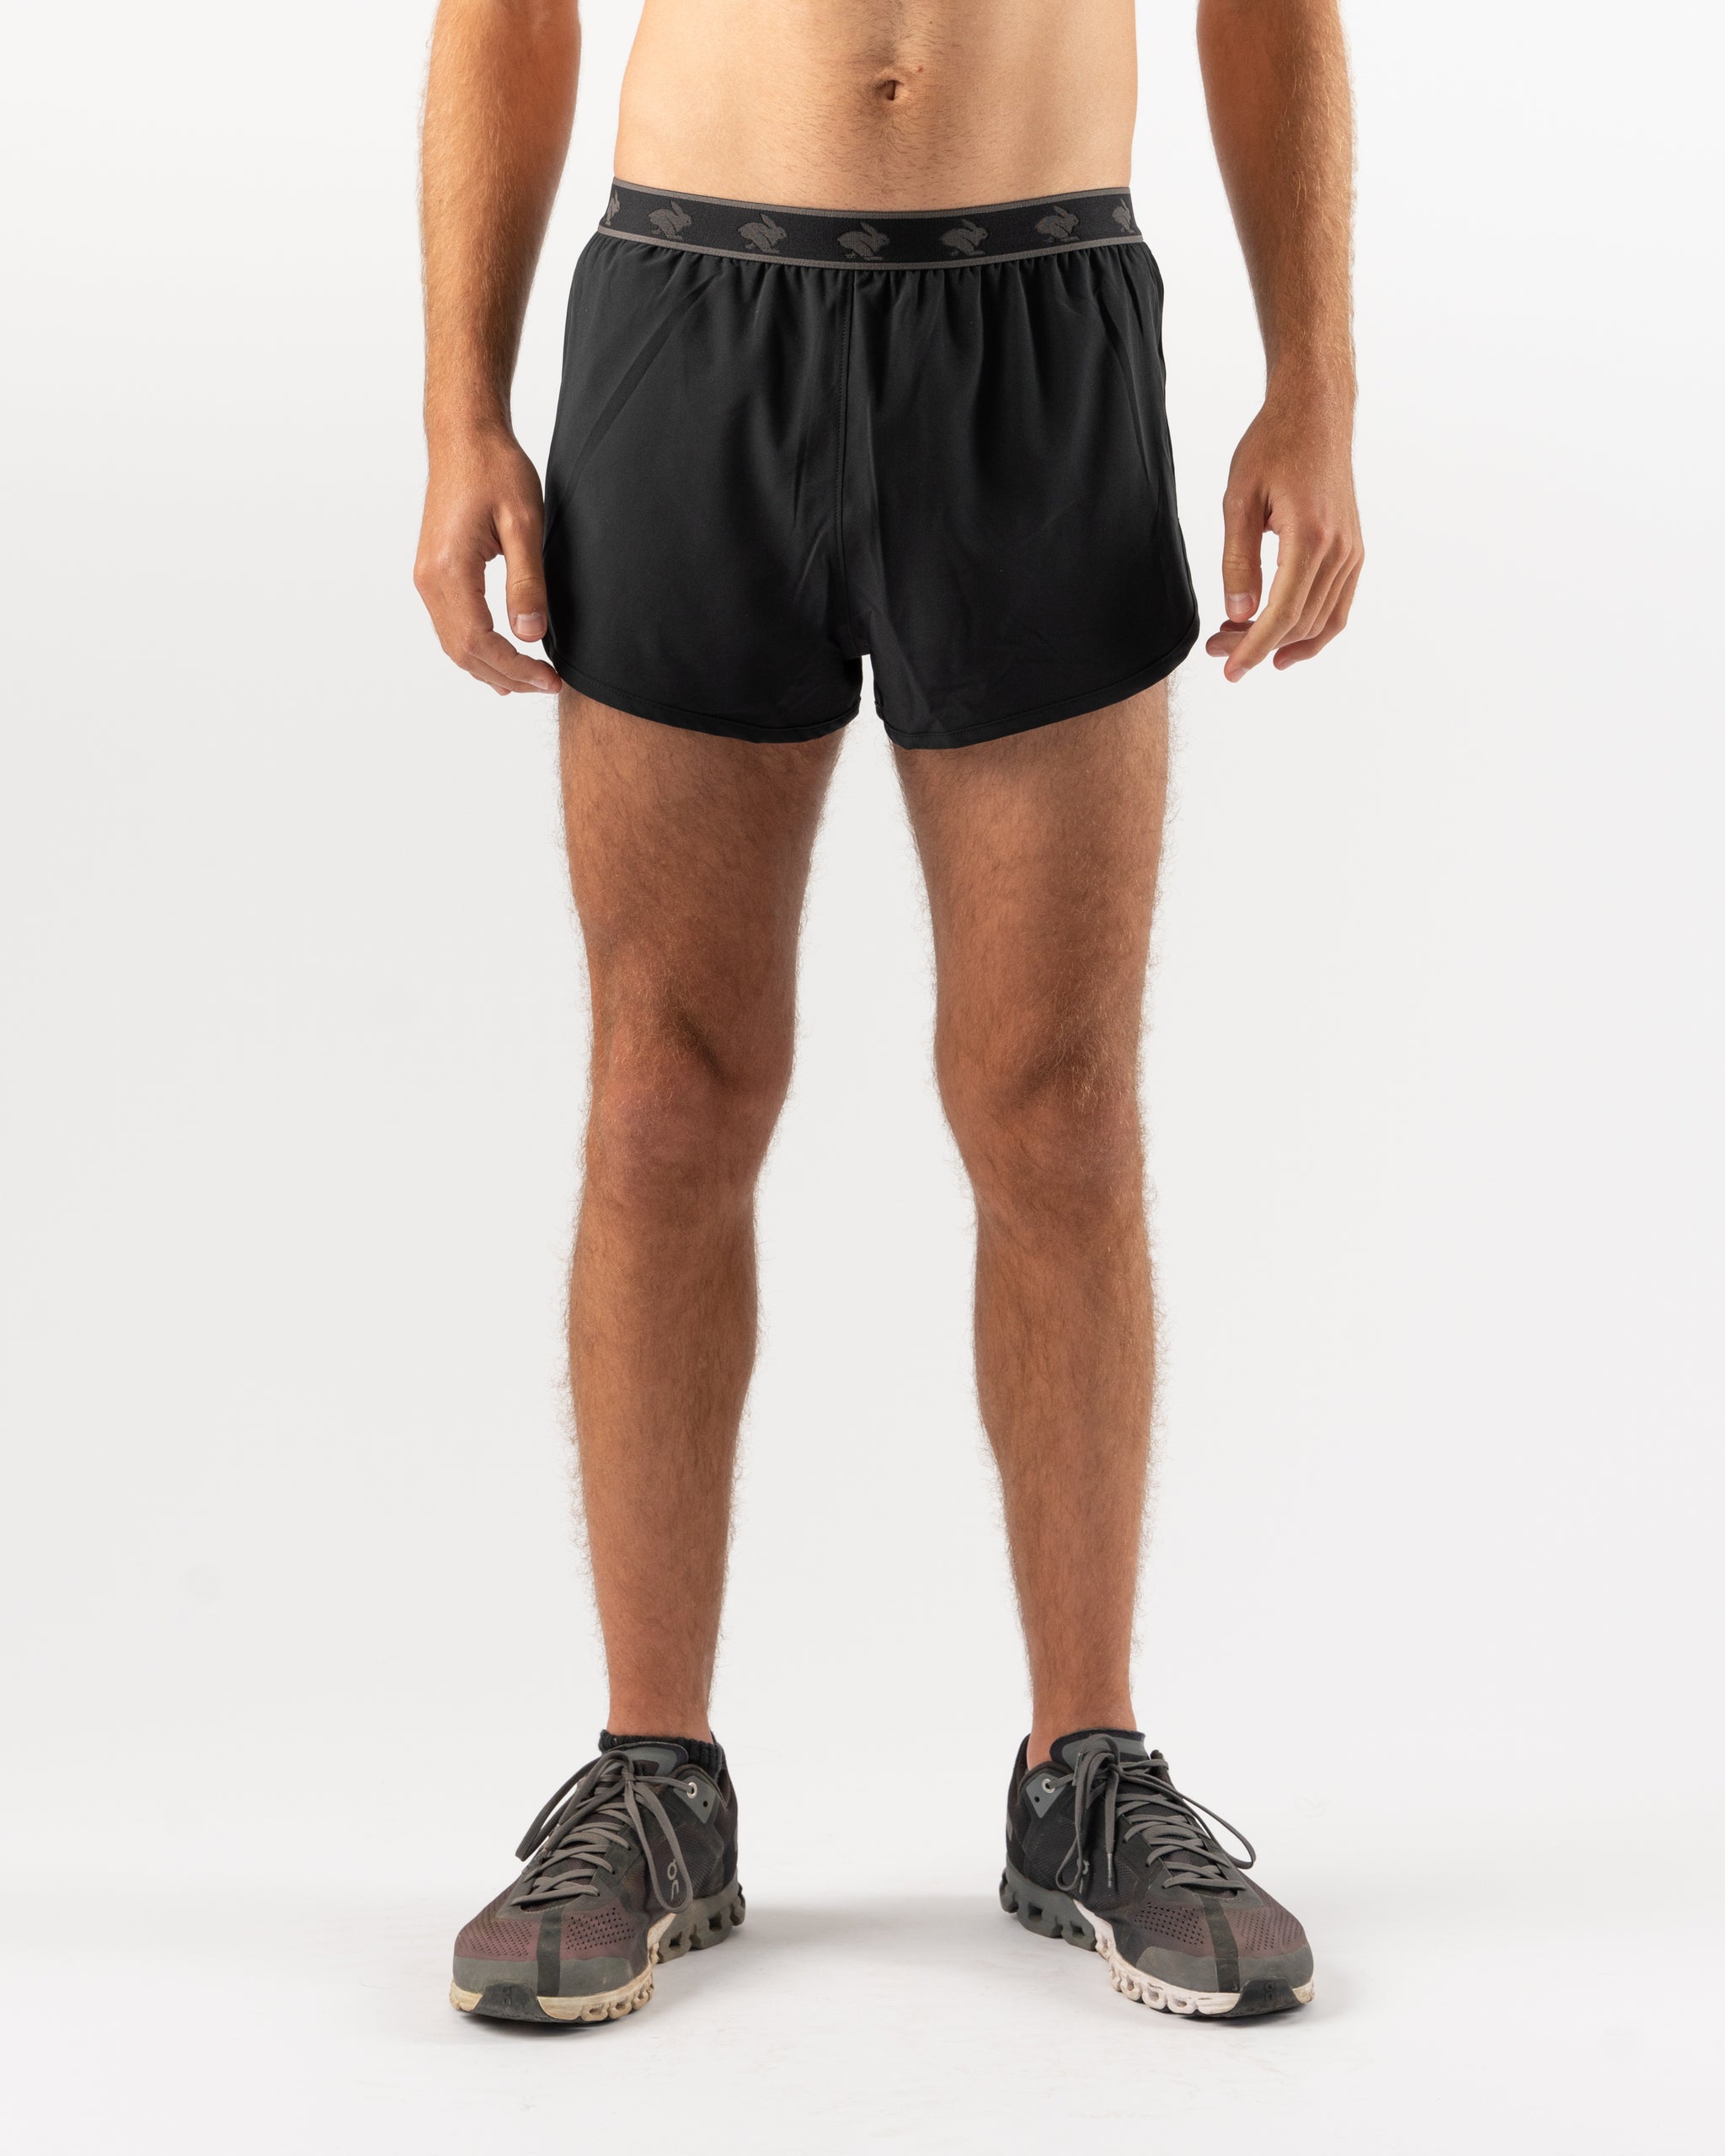 Shorts - Running - Men